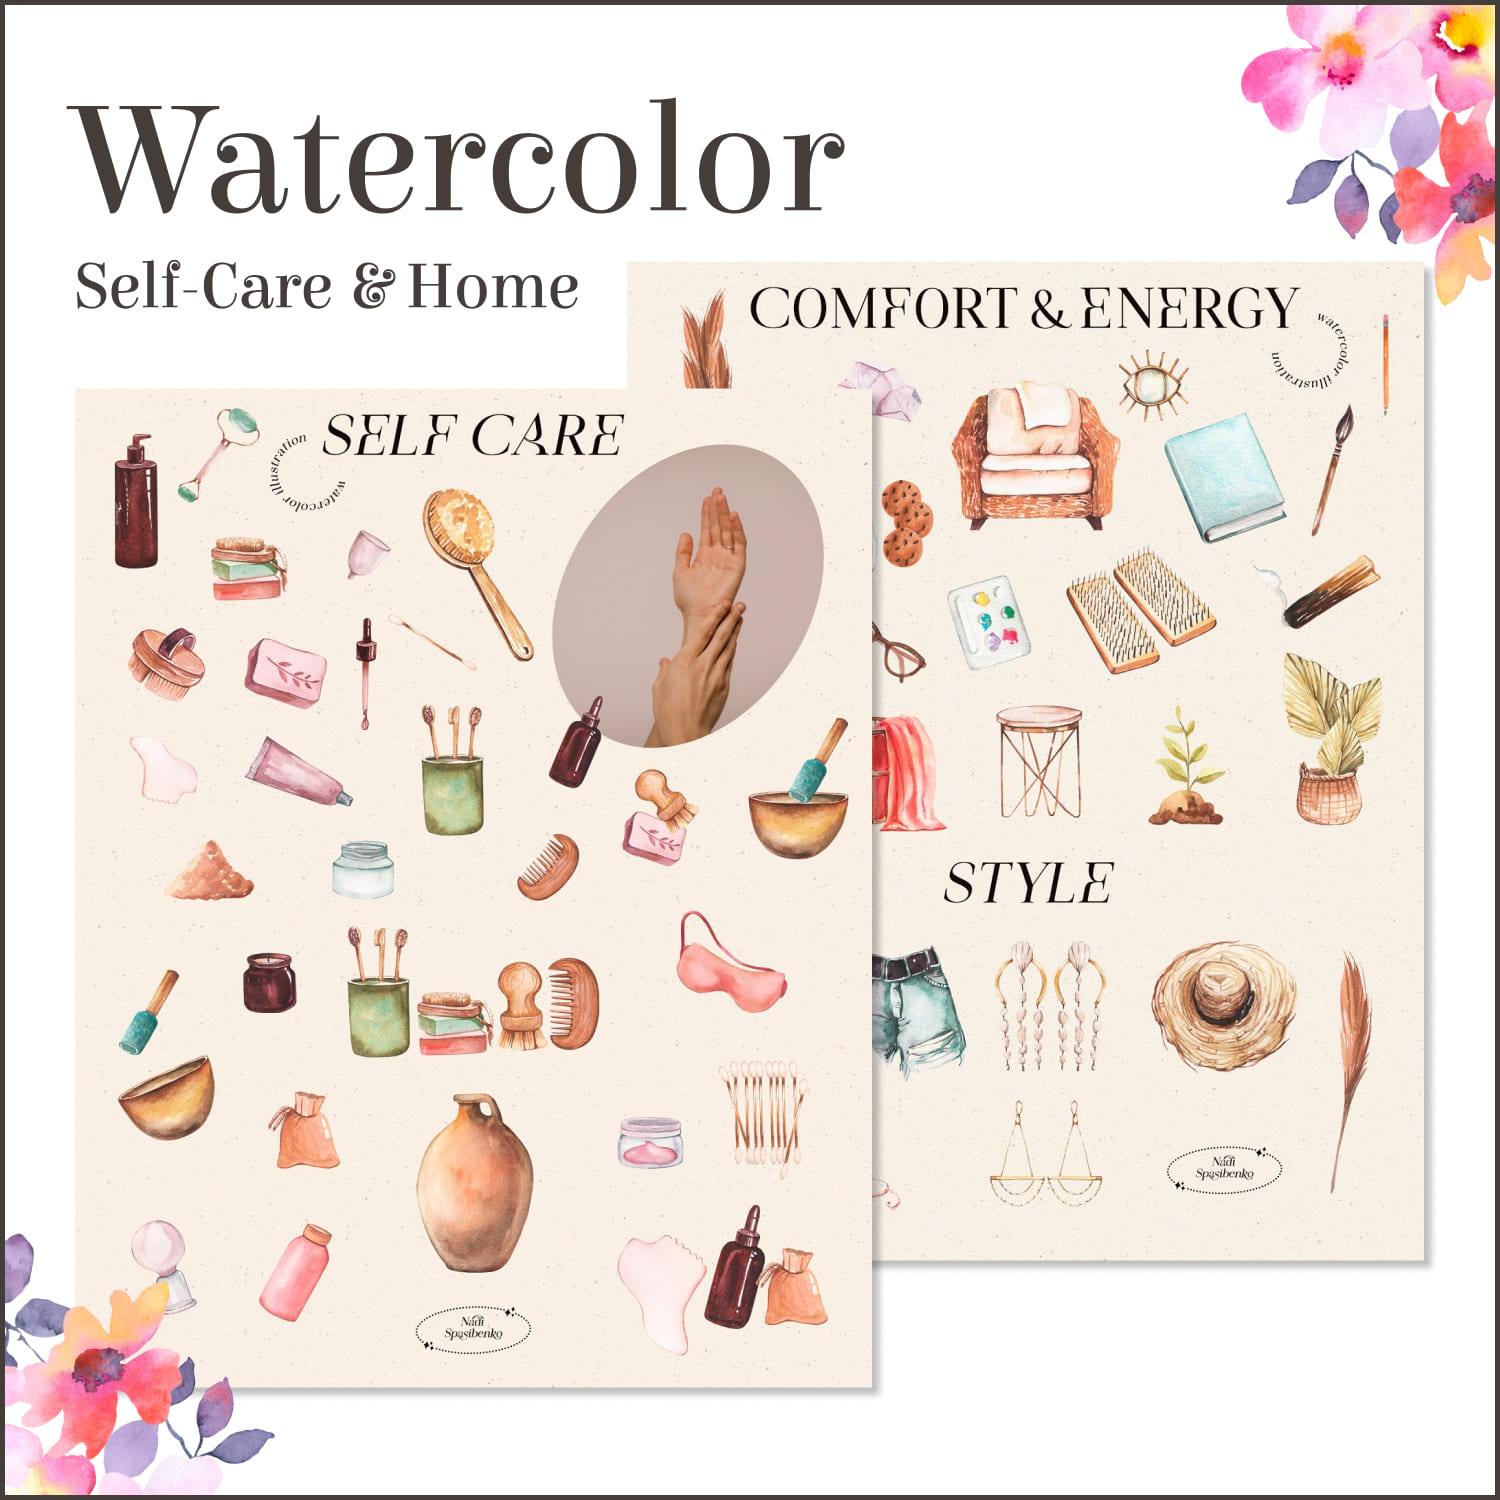 Watercolor Self-Care & Home.